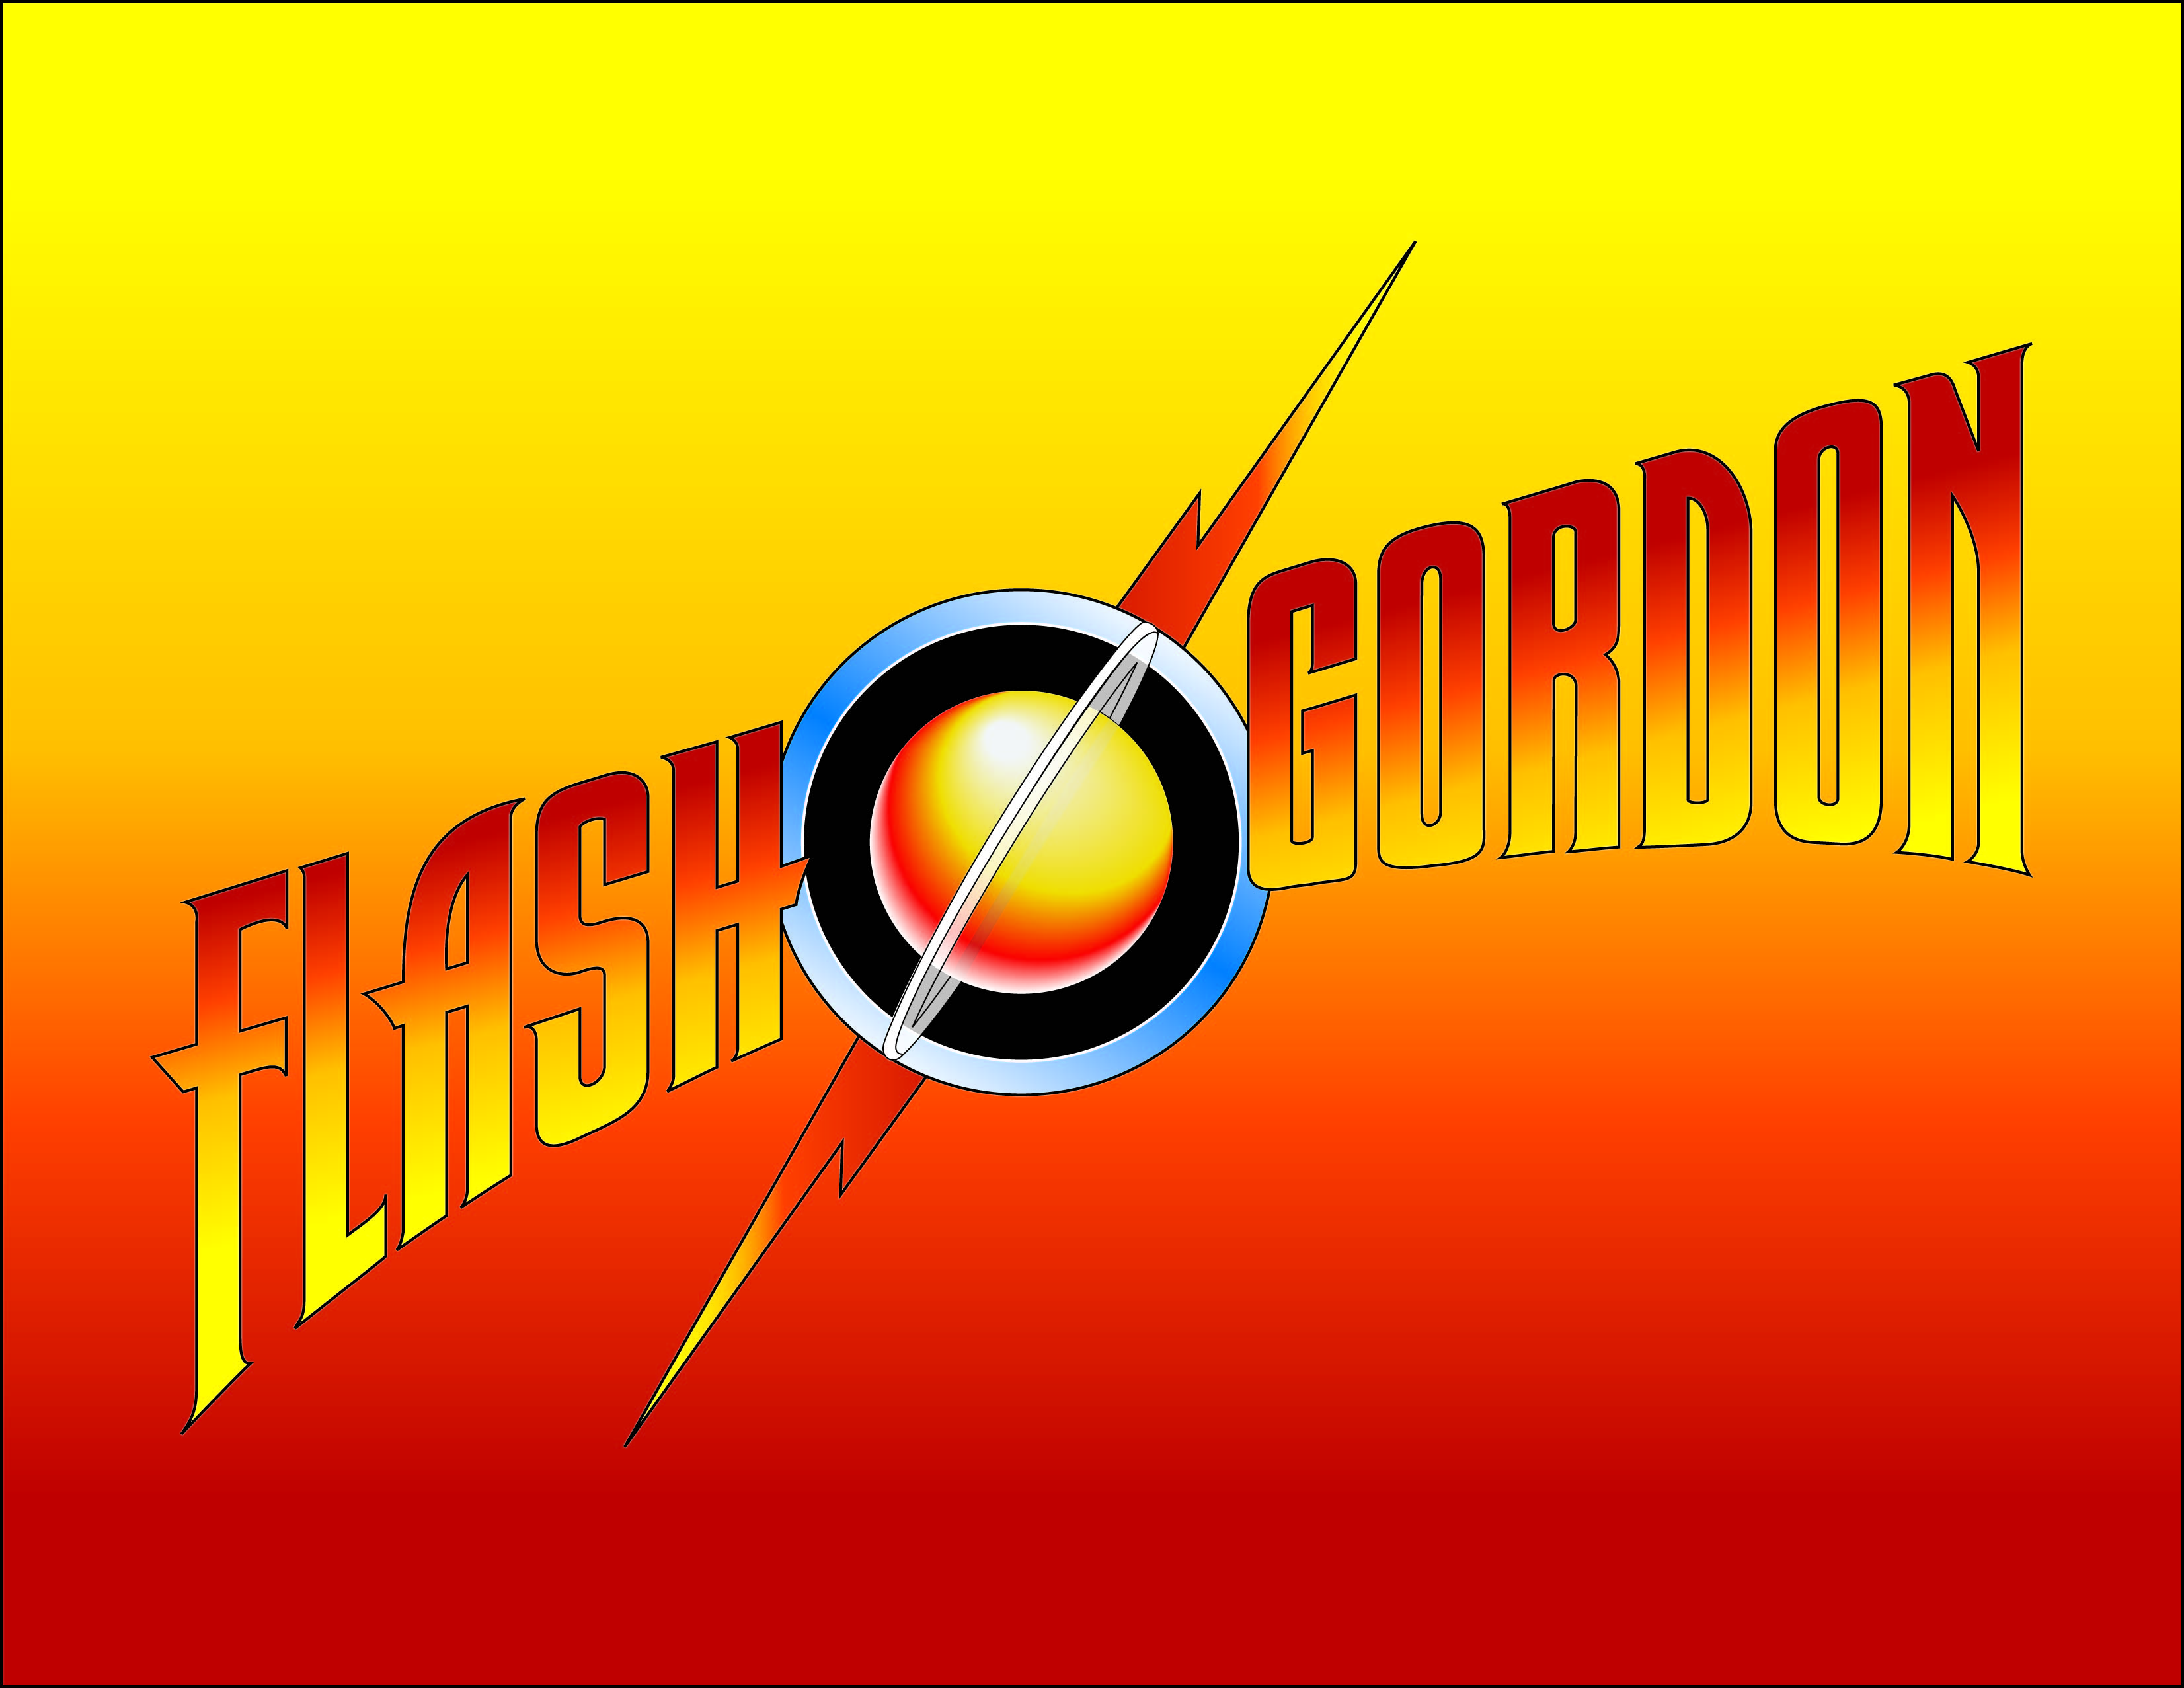 Flash Gordon Backgrounds, Compatible - PC, Mobile, Gadgets| 3304x2554 px